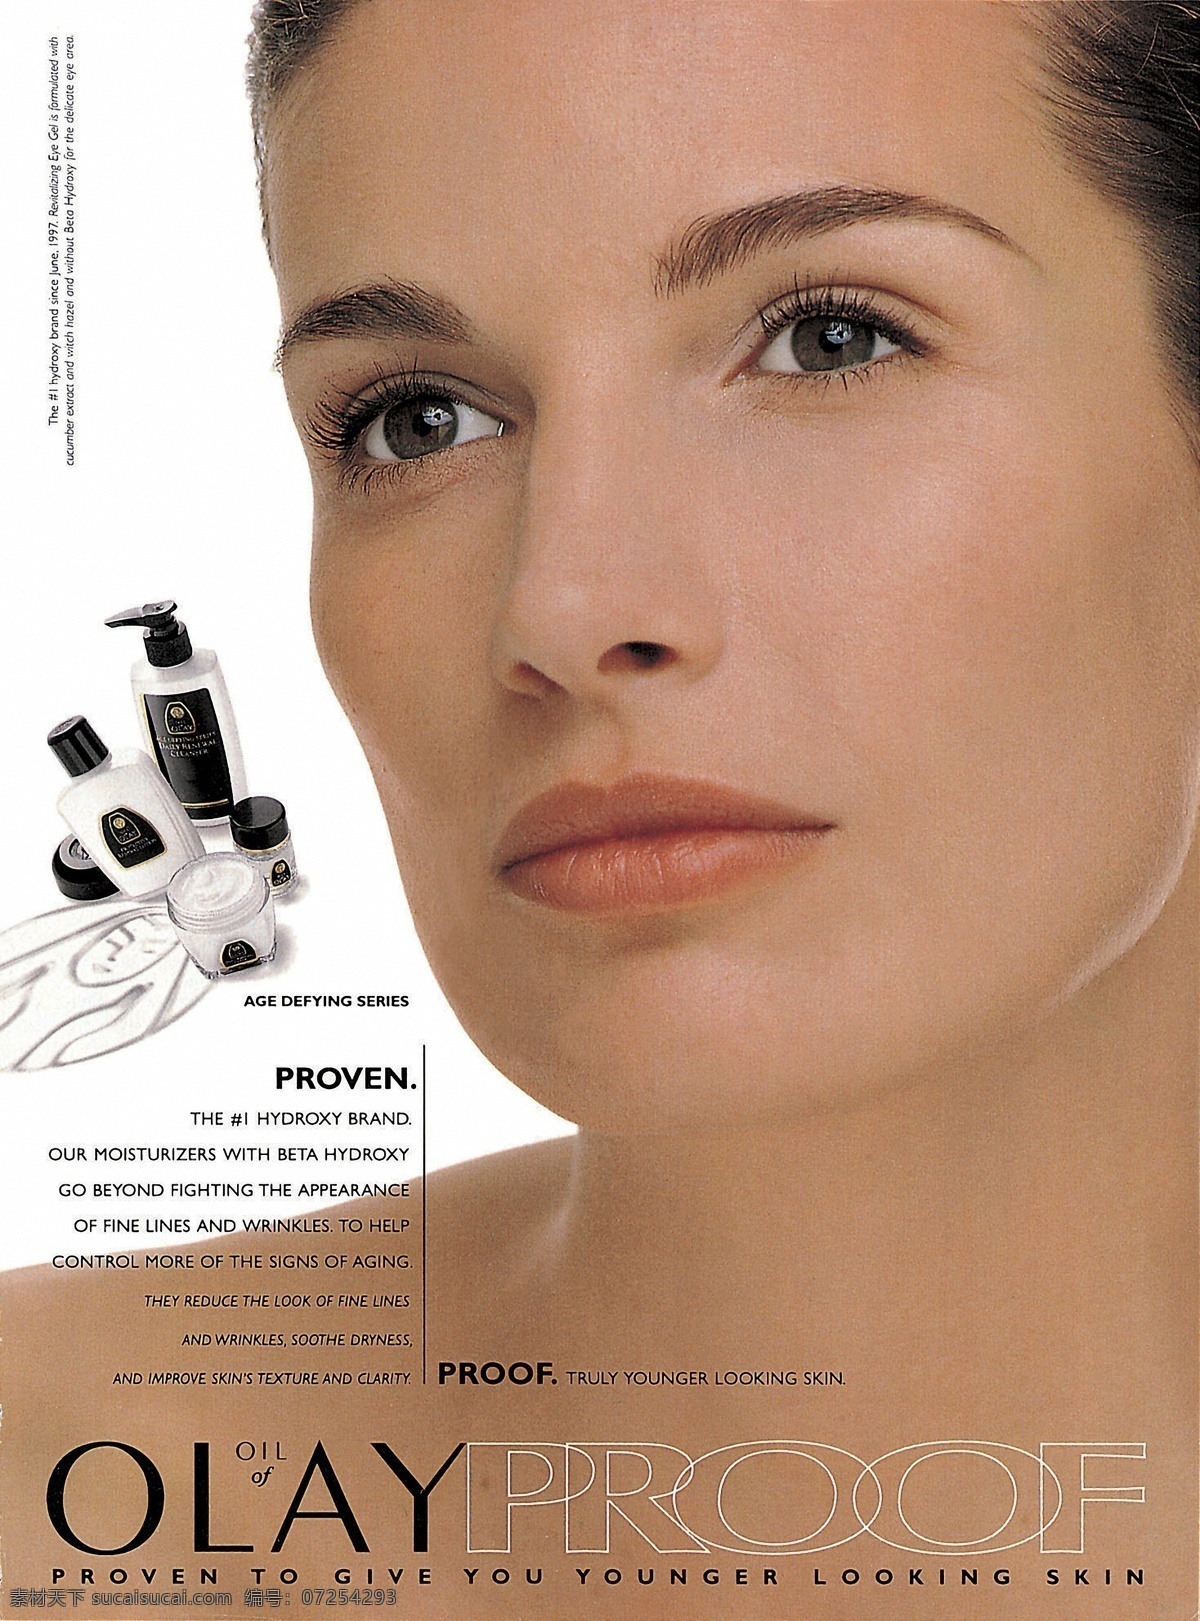 化妆品 饰品 平面广告作品 设计素材 美容化妆 平面创意 平面设计 白色